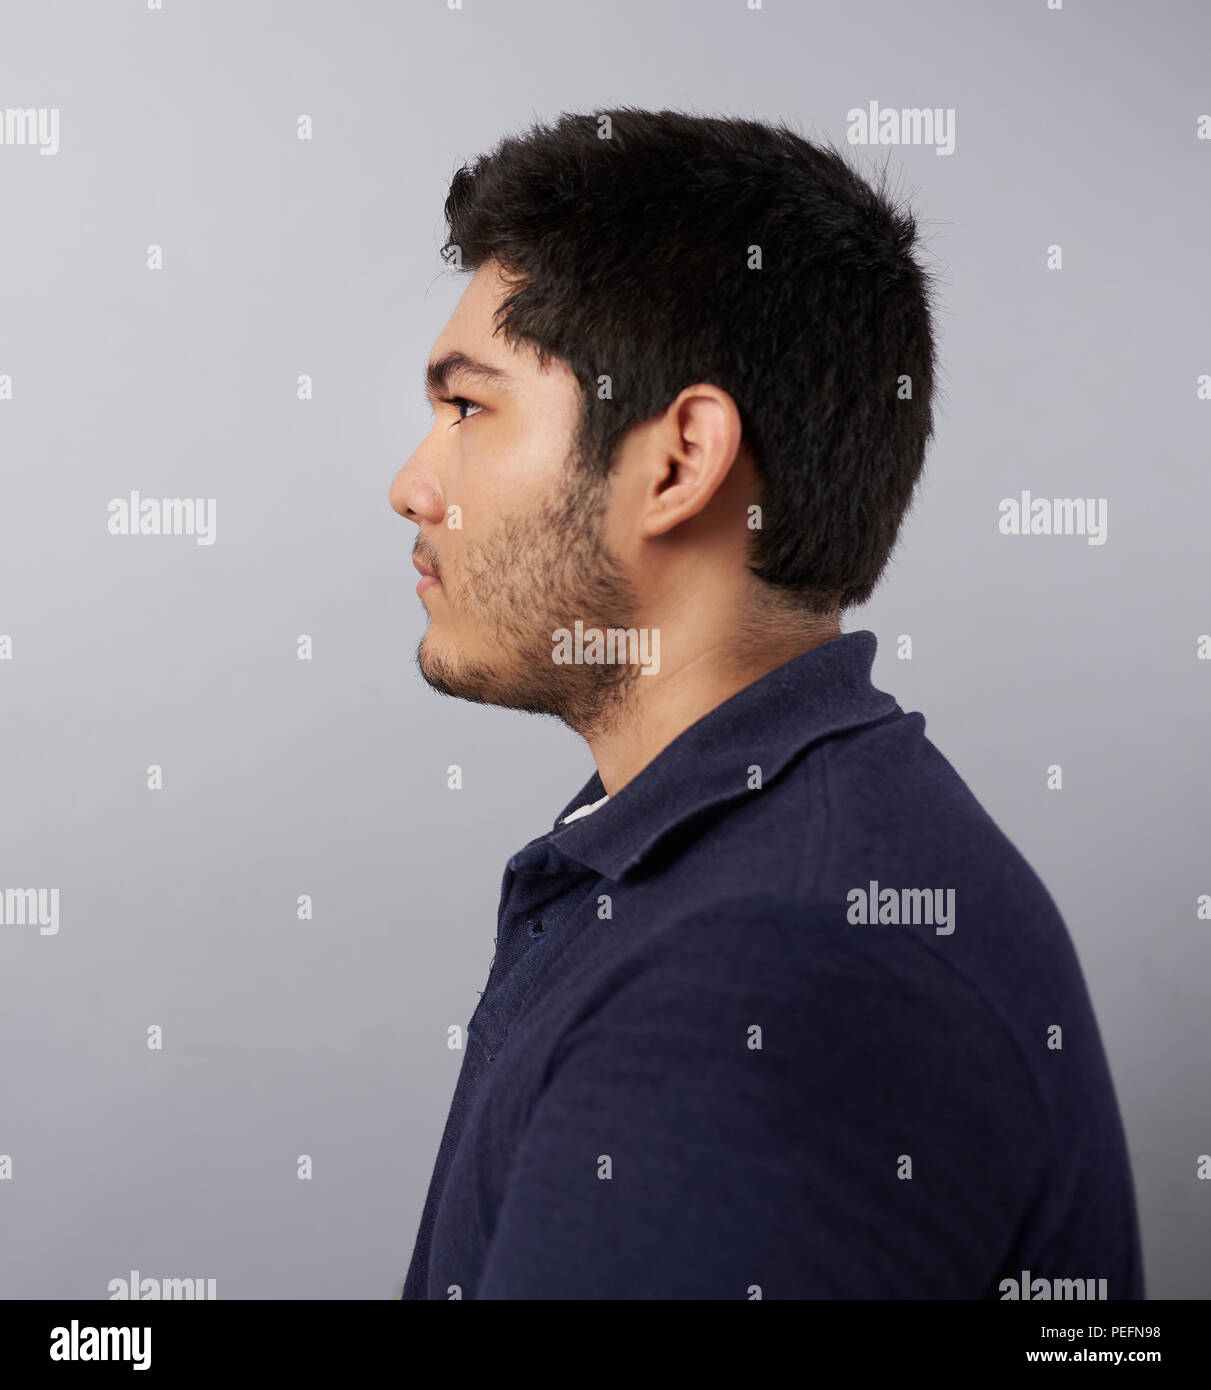 Junger Mann Profil anzeigen auf Grau studio Hintergrund isoliert Stockfoto